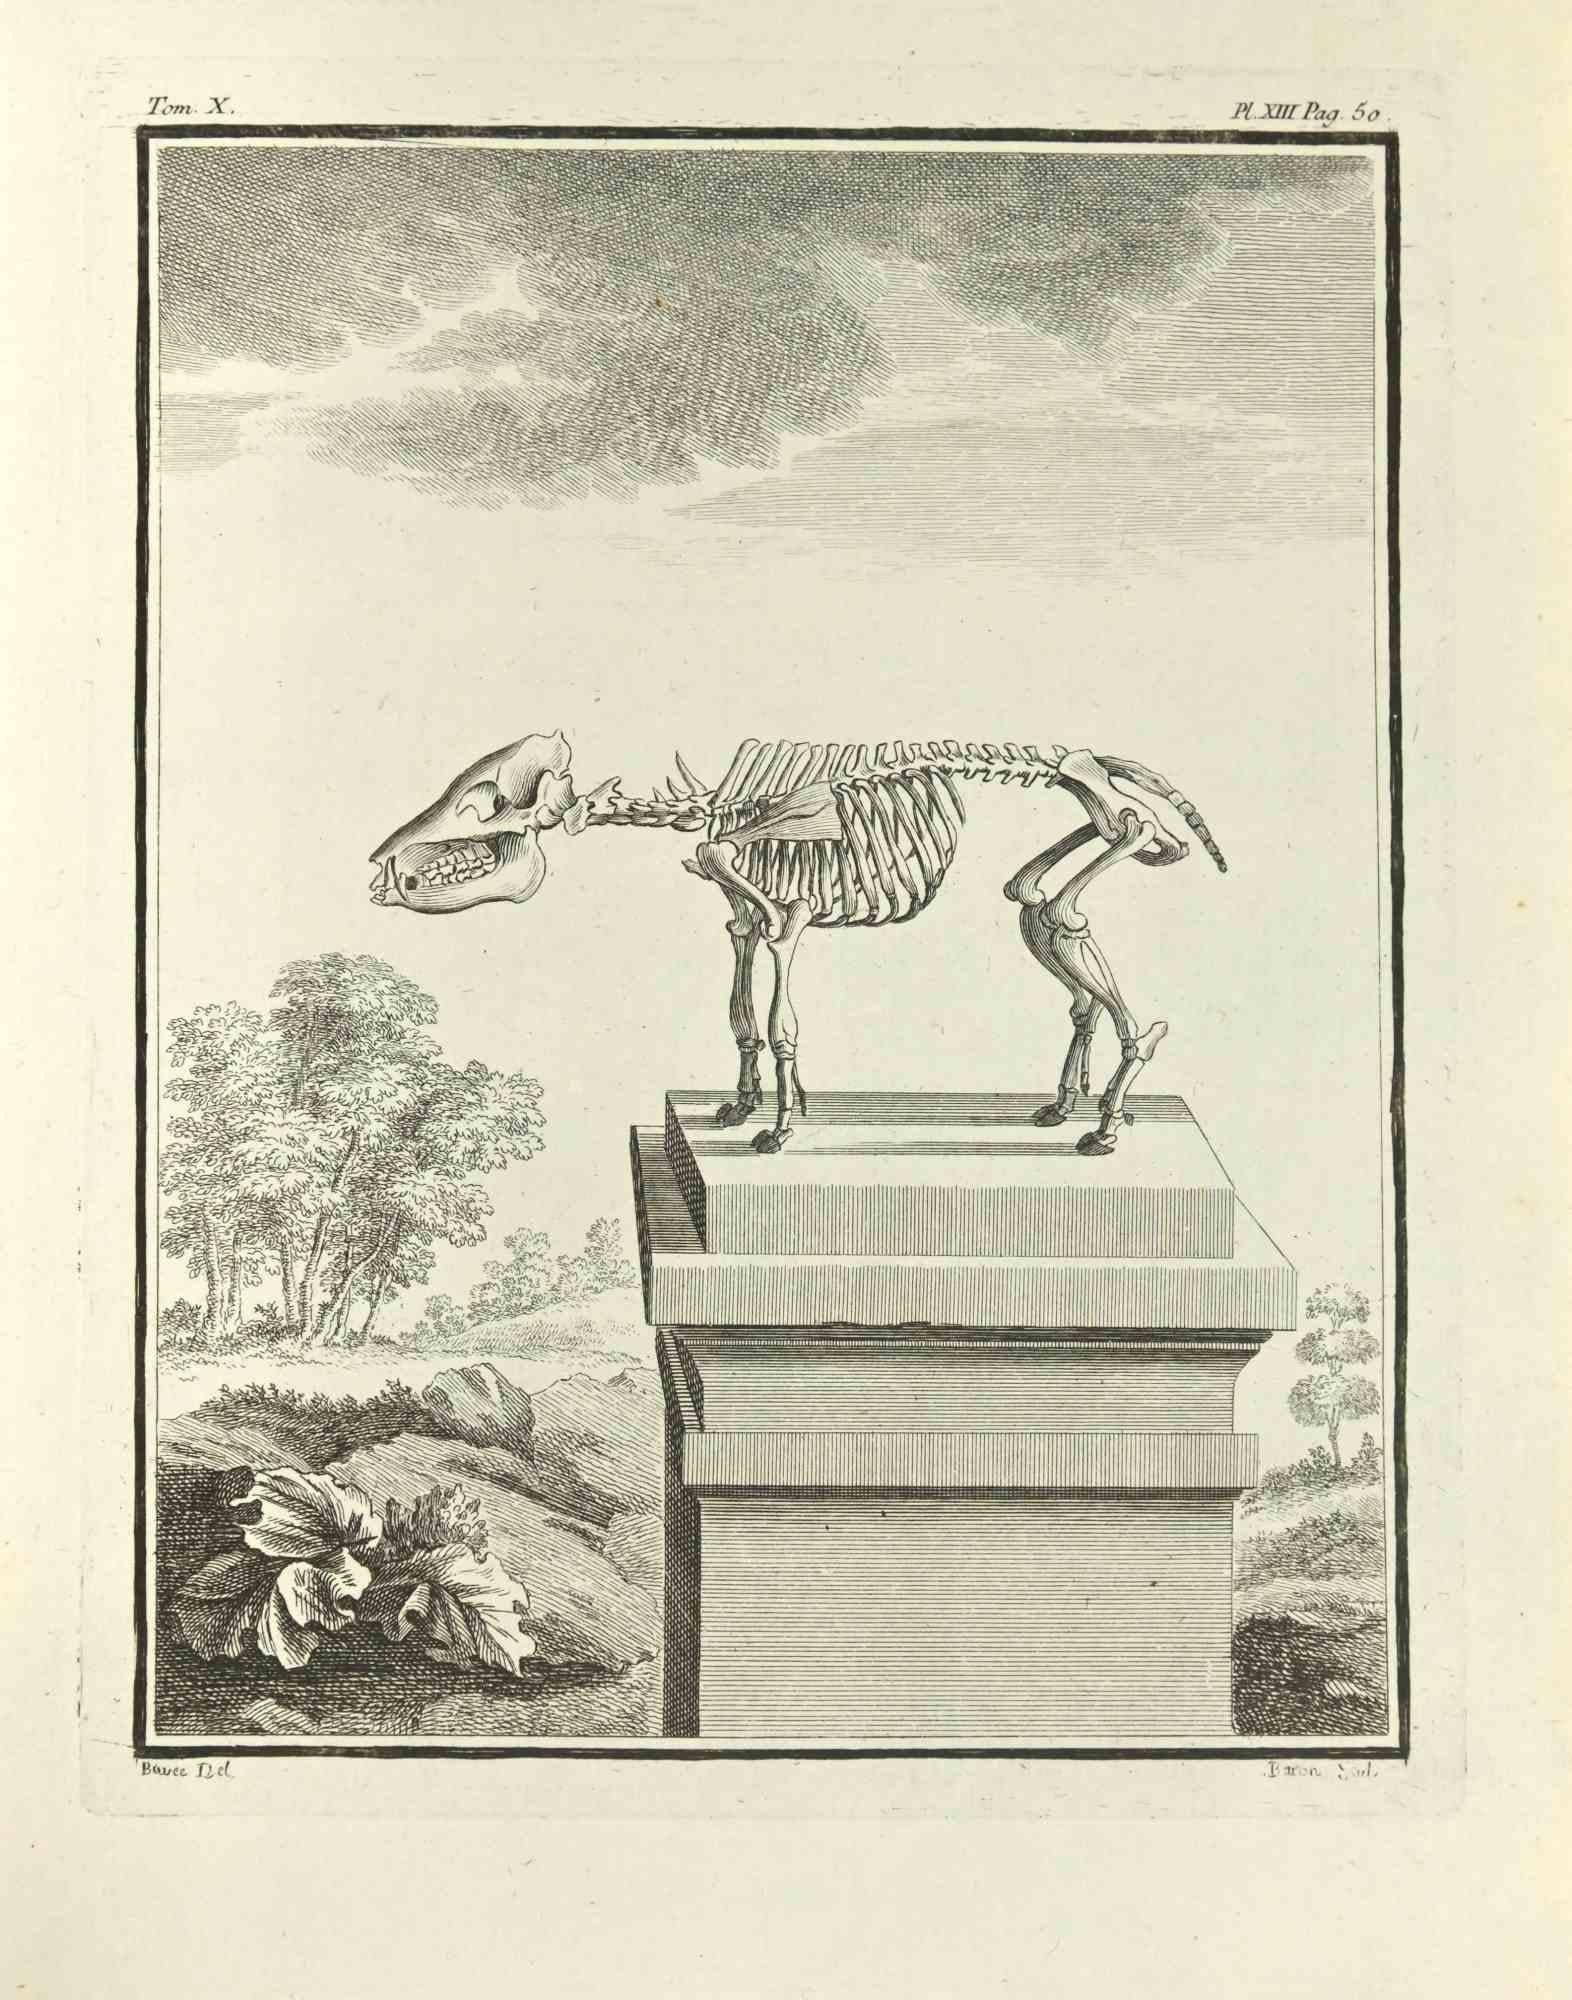 Le Squelette est une gravure réalisée par Jacques Baron en 1771.

Il appartient à la suite "Histoire Naturelle de Buffon".

La signature de l'Artistics est gravée en bas à droite.

Bonnes conditions